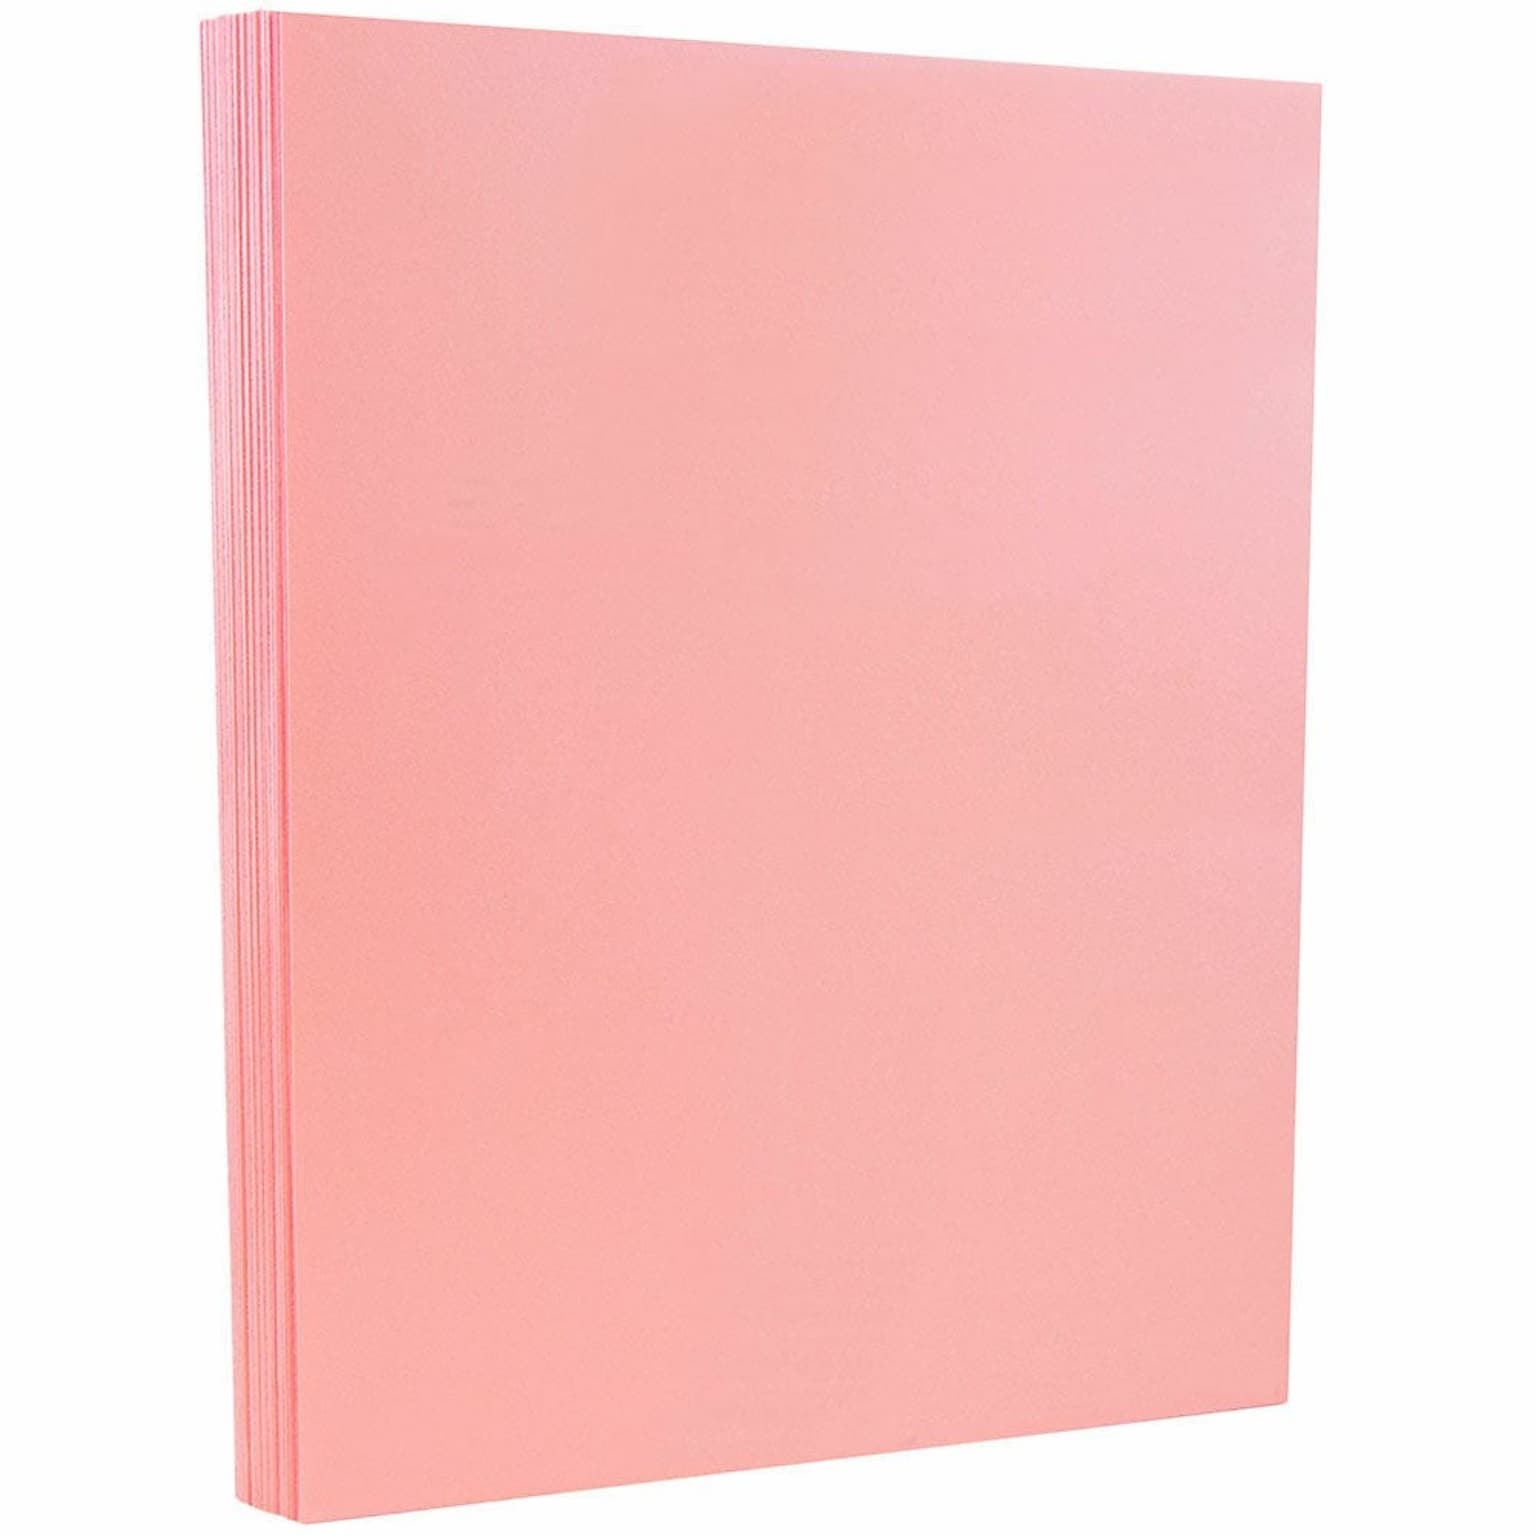 JAM PAPER 8.5 x 11 Vellum Bristol Cardstock, 67lb, Pink, 100/pack  (169831G)